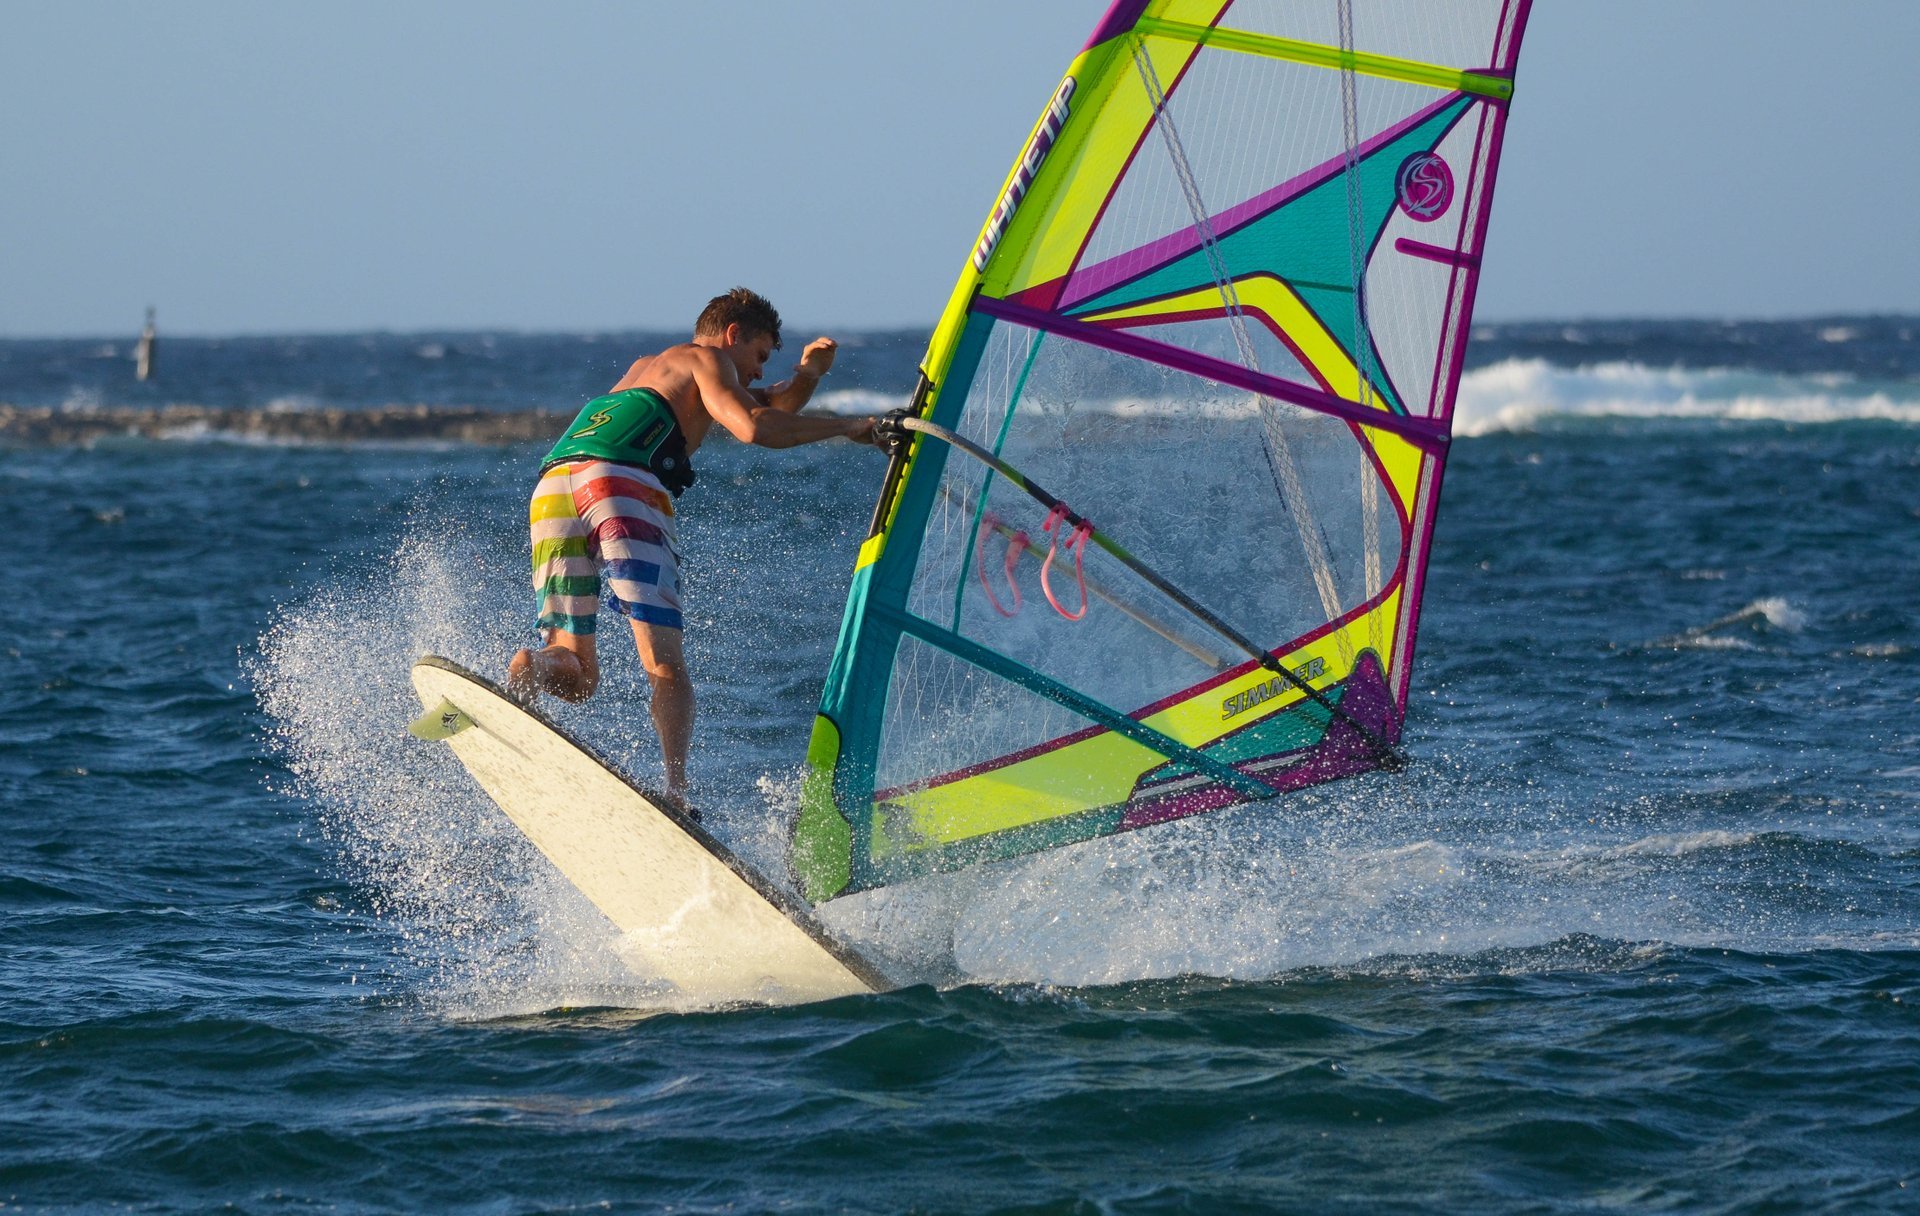 Kitesurf e windsurf